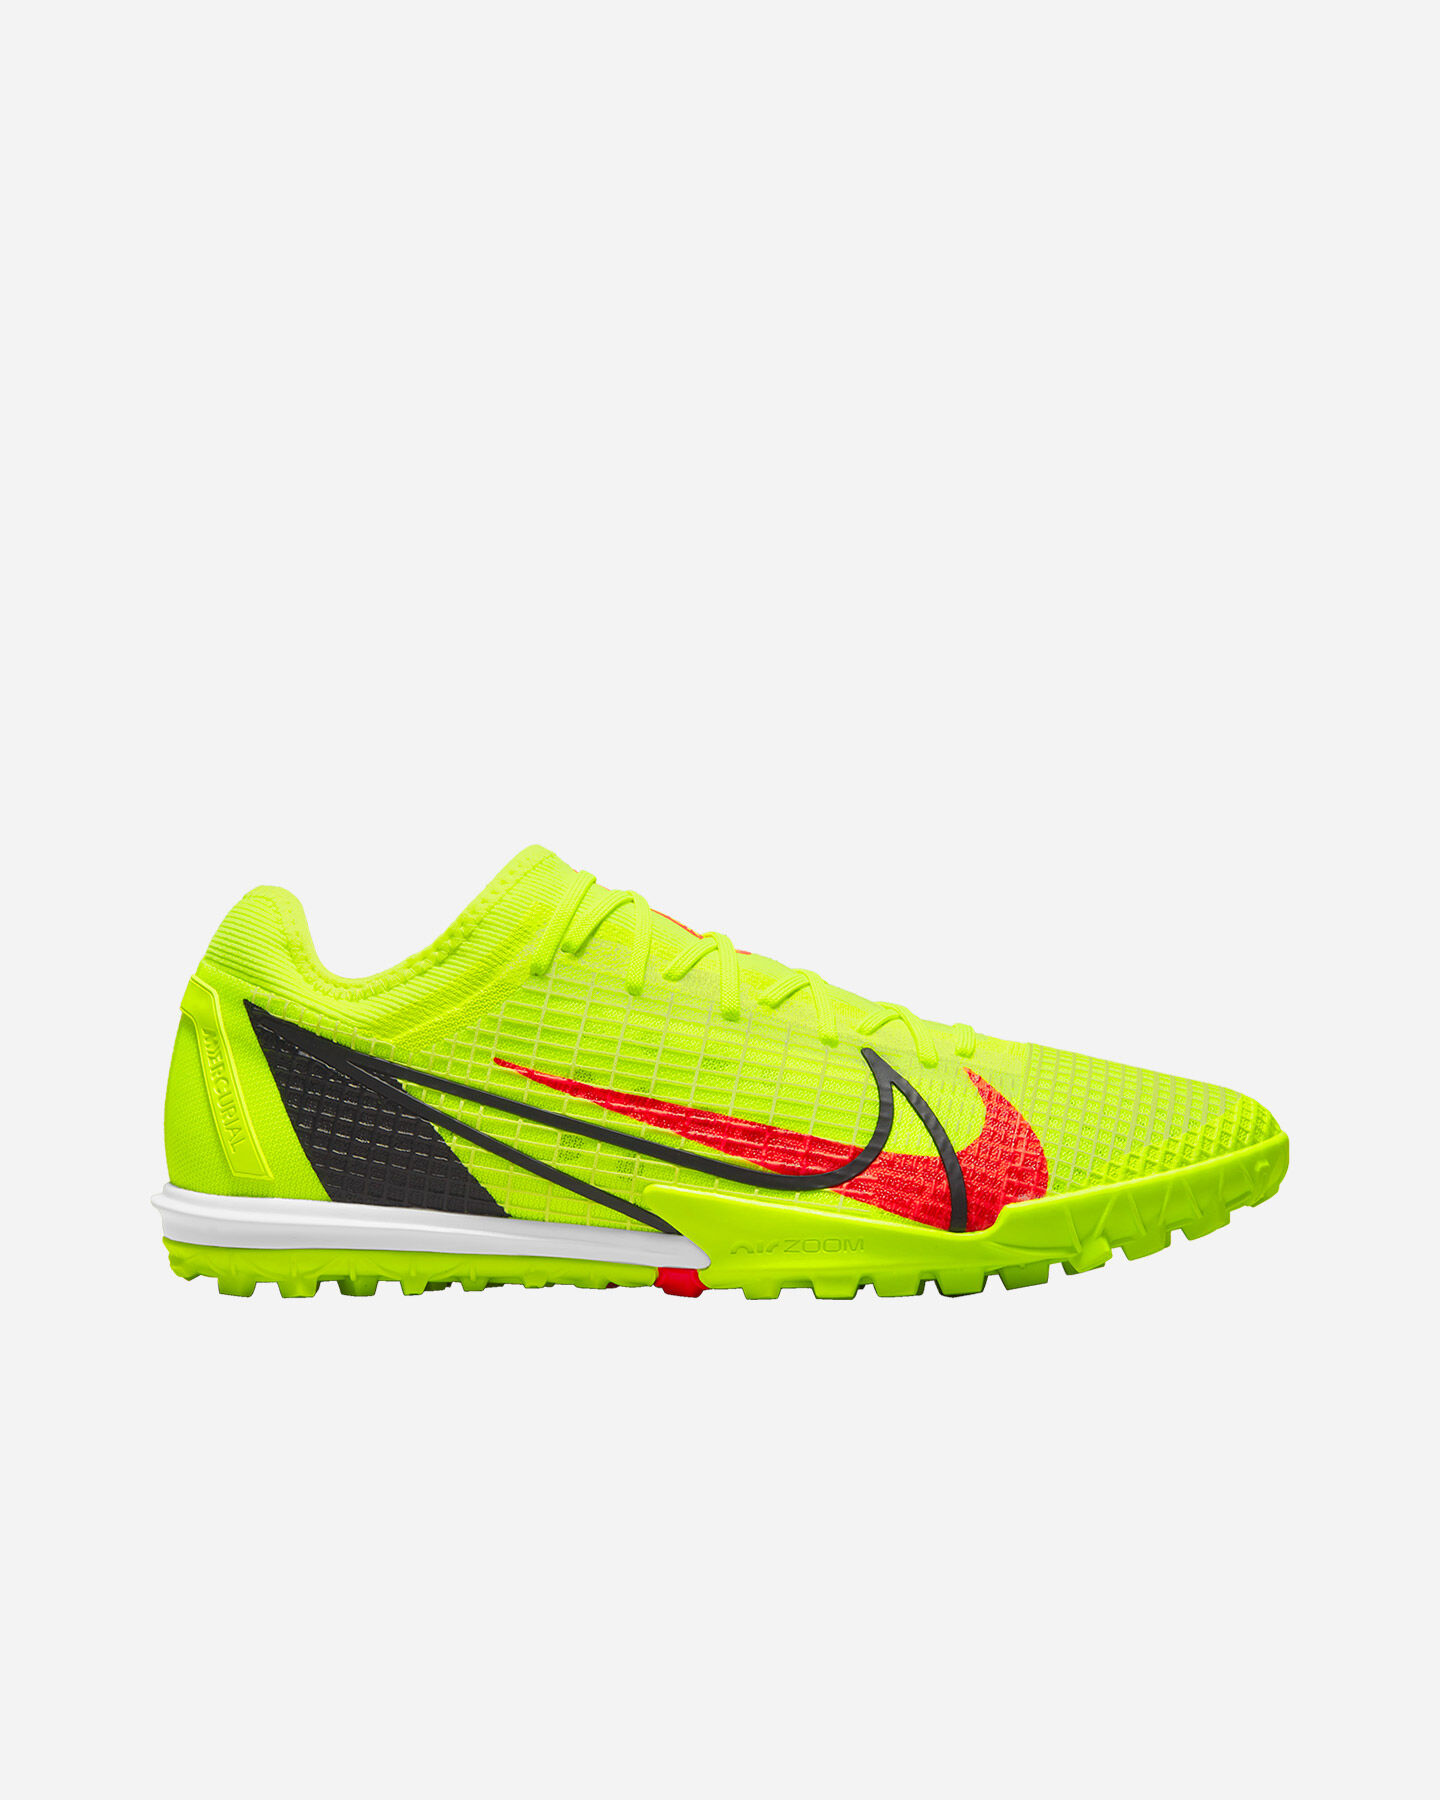 Collezione Nike Mercurial: scarpe da calcio uomo e donna | Cisalfa Sport